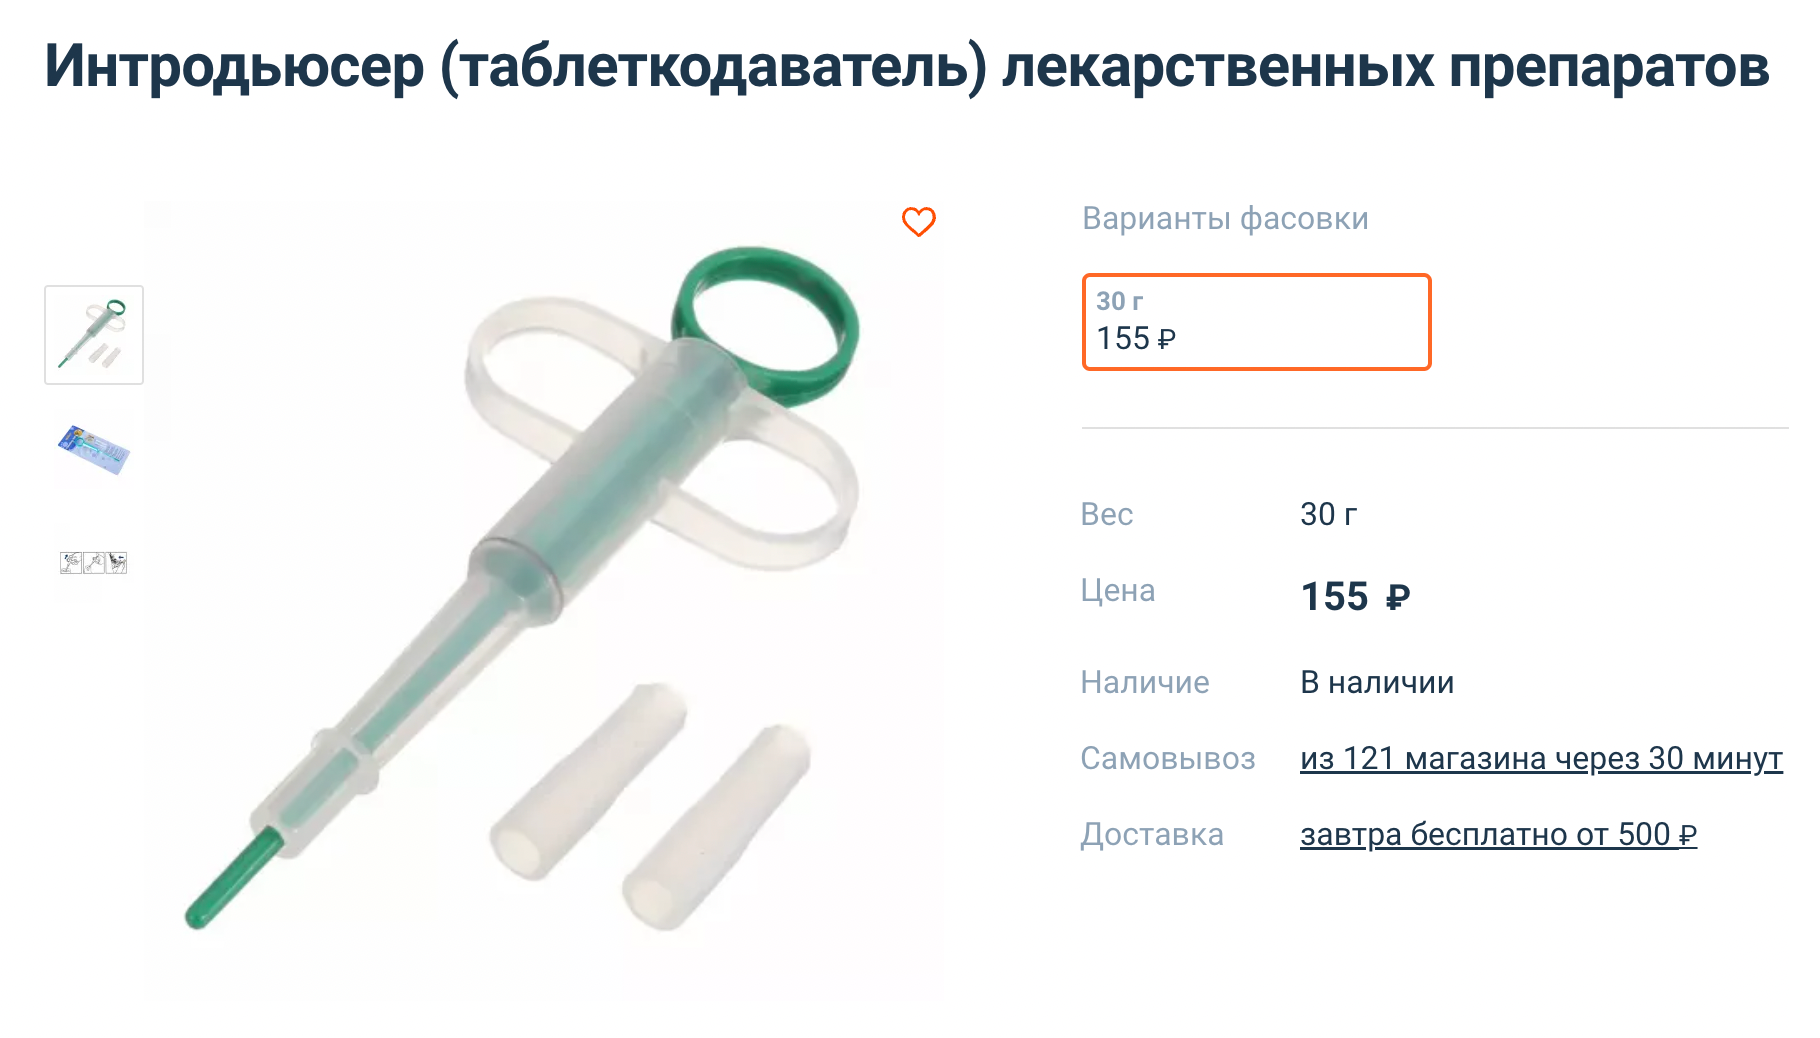 Такой же таблеткодаватель был у нас. Источник: 4lapy.ru